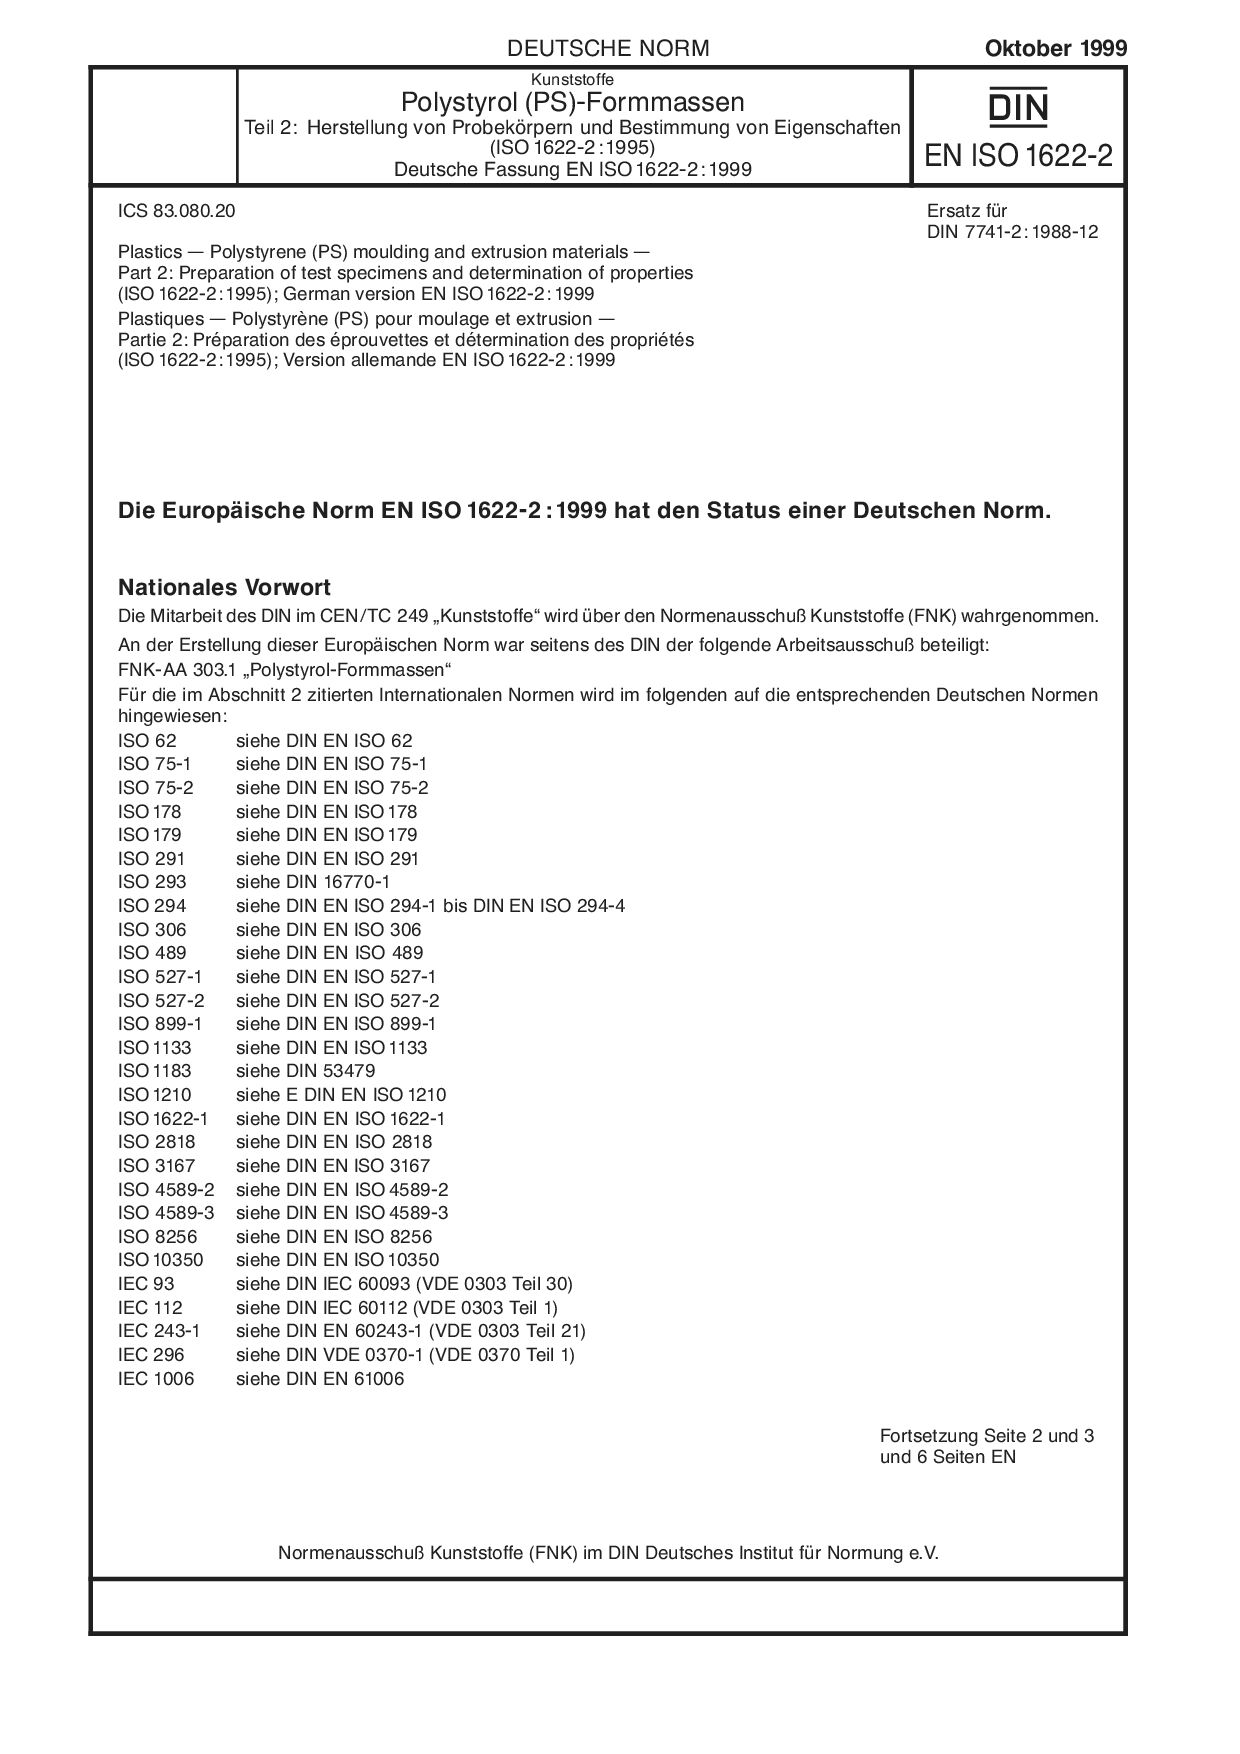 DIN EN ISO 1622-2:1999